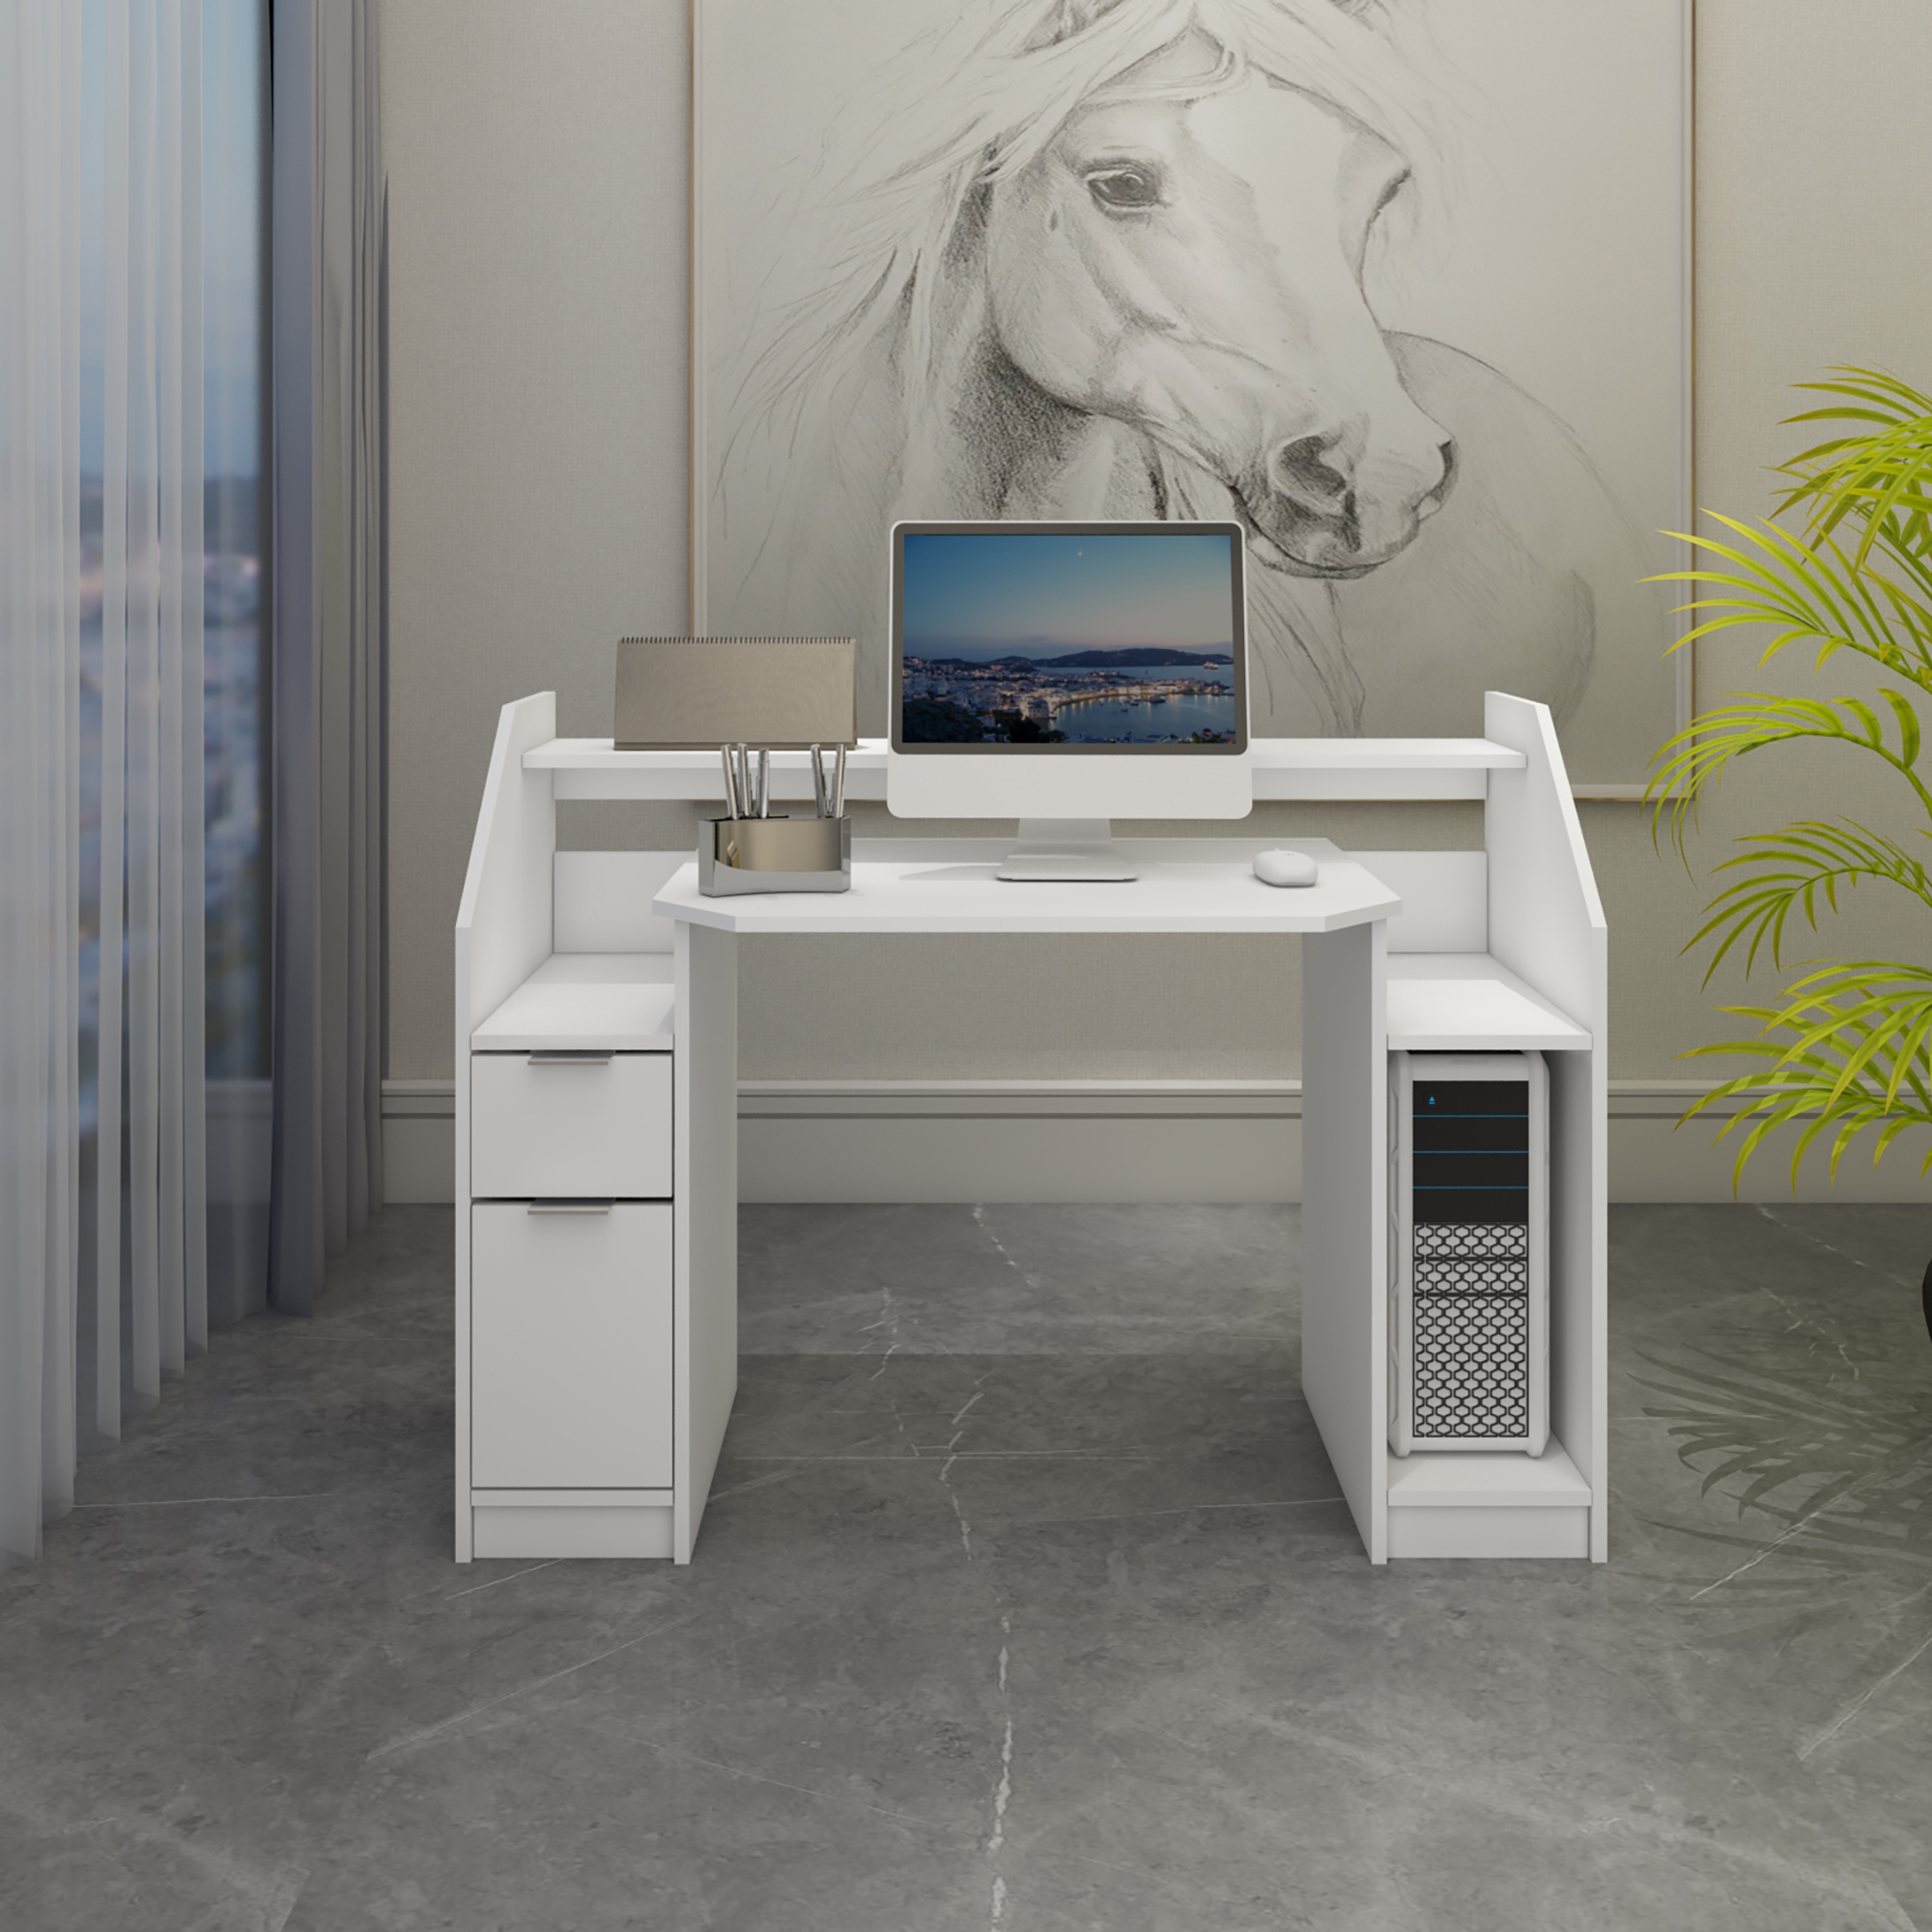 Estanterías: Dale un look moderno a tu escritorio. 